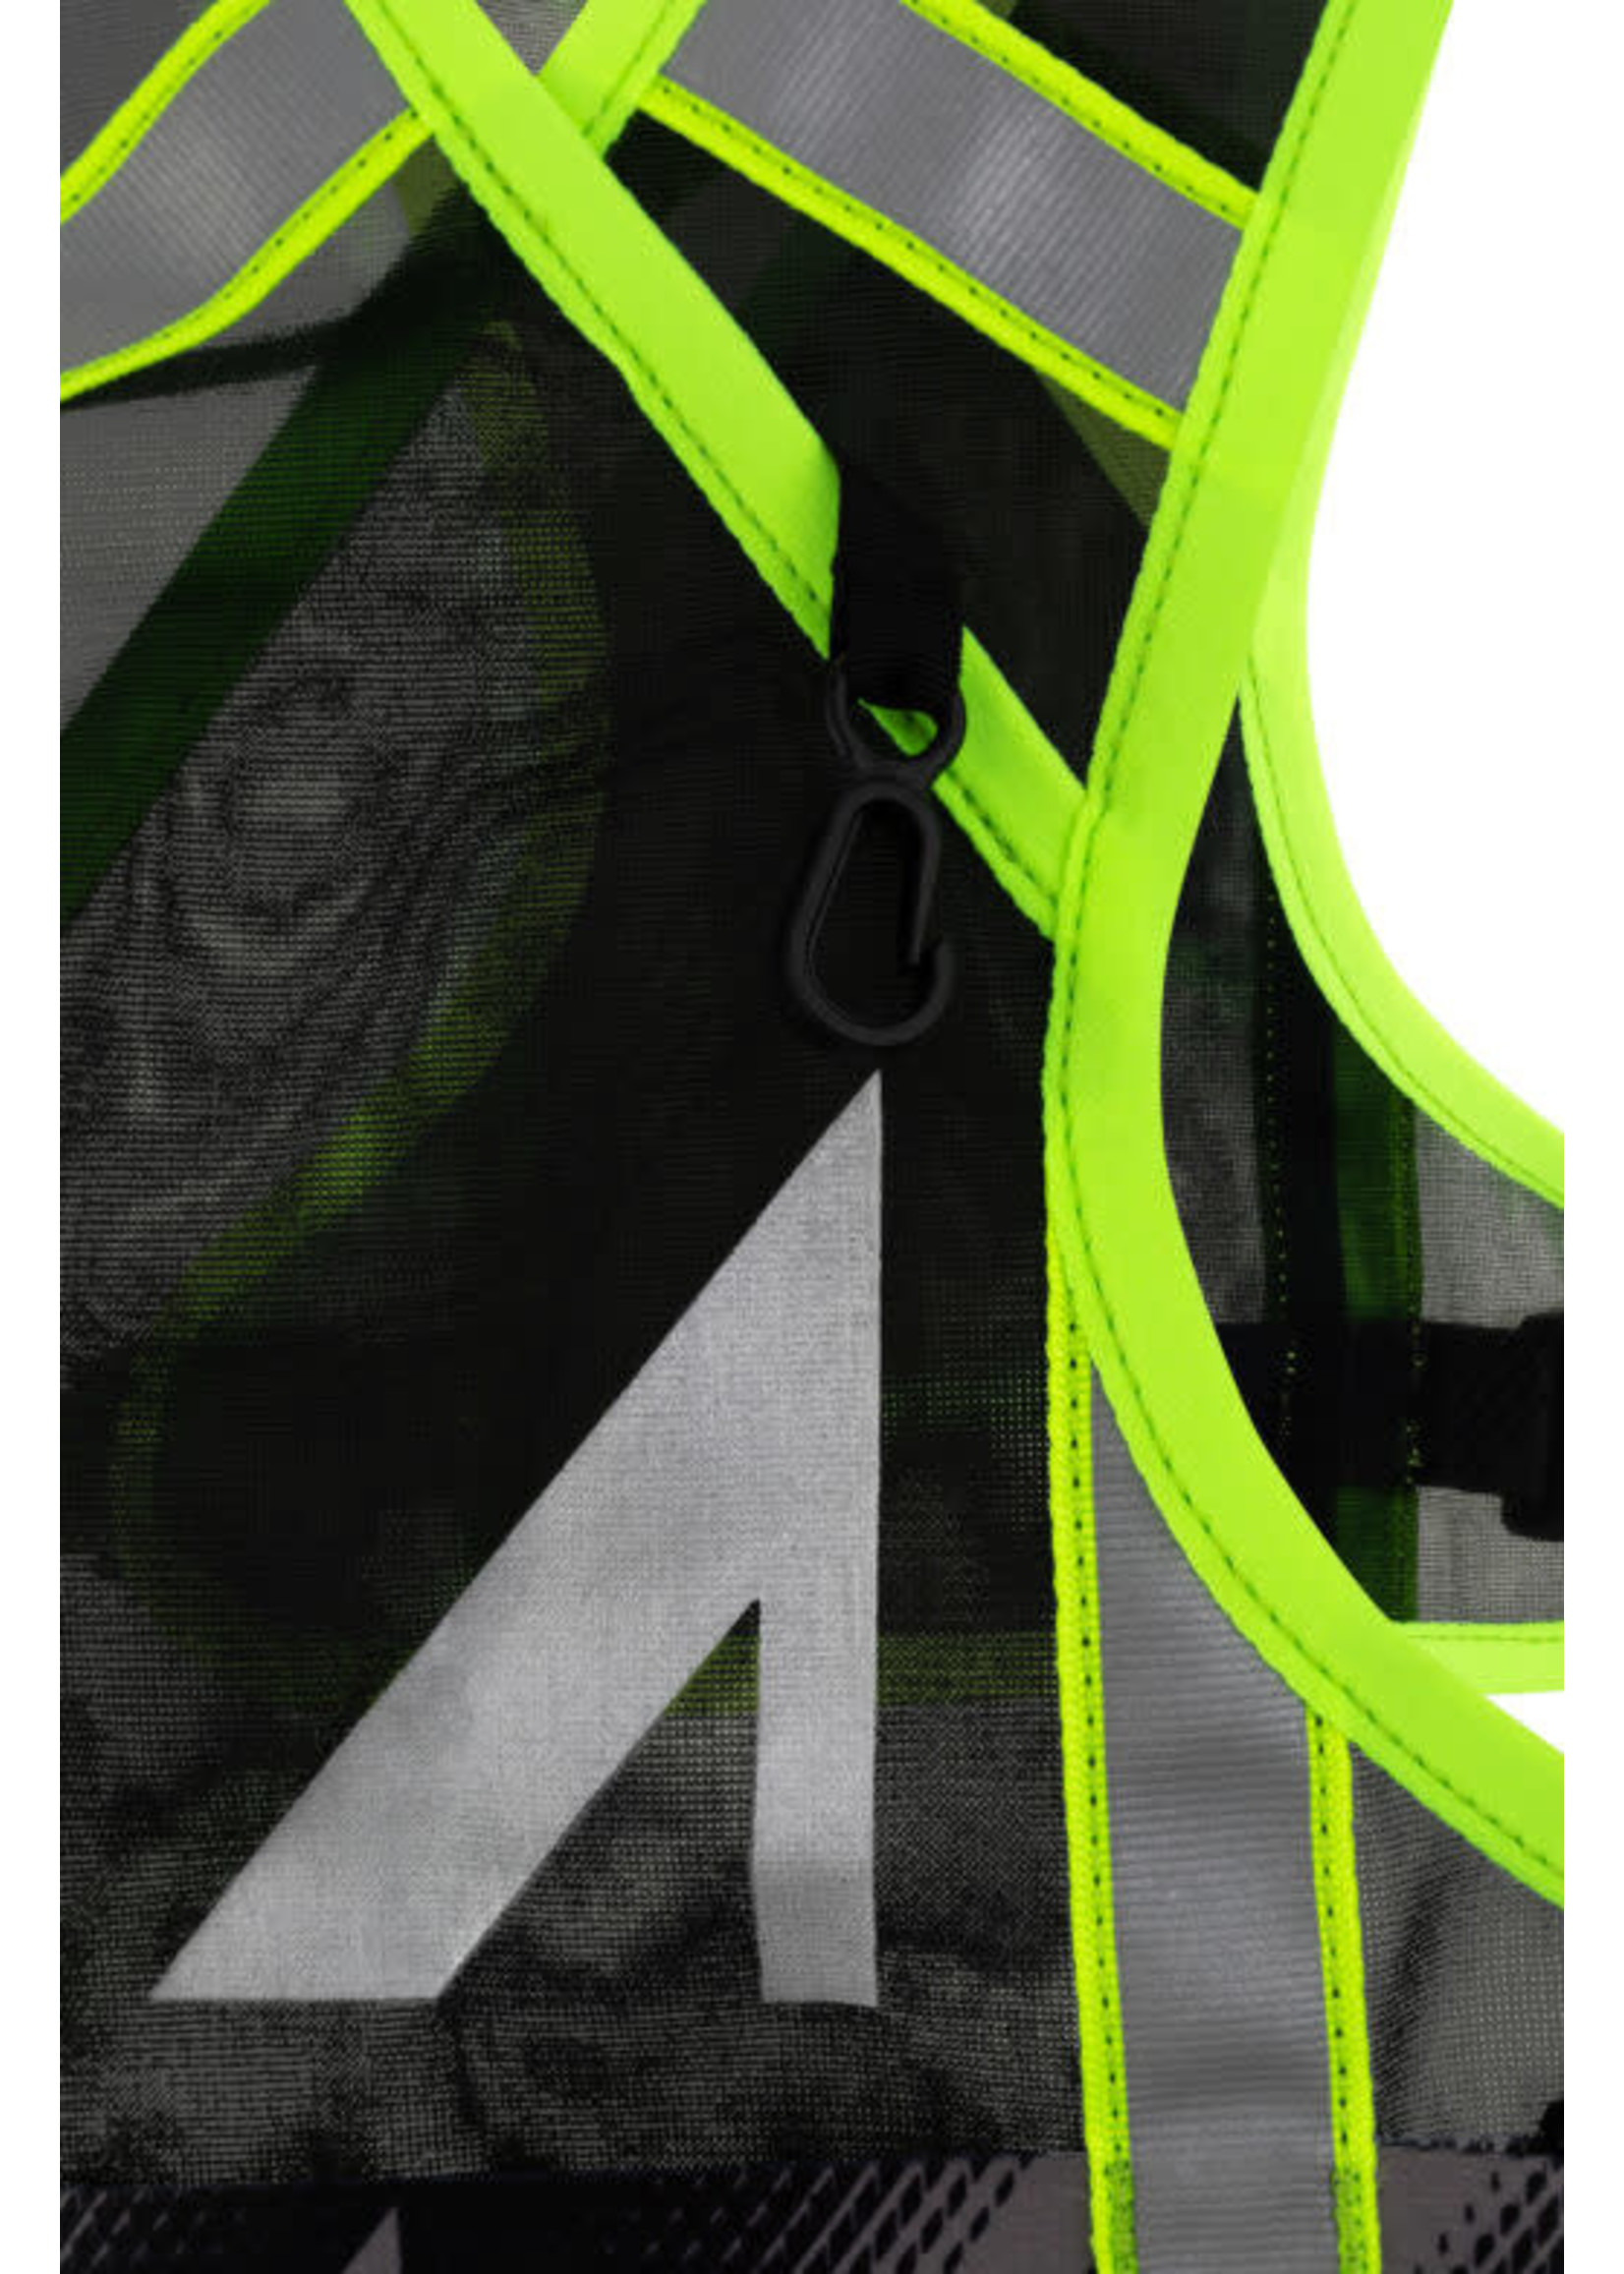 UltrAspire Neon Reflective Vests